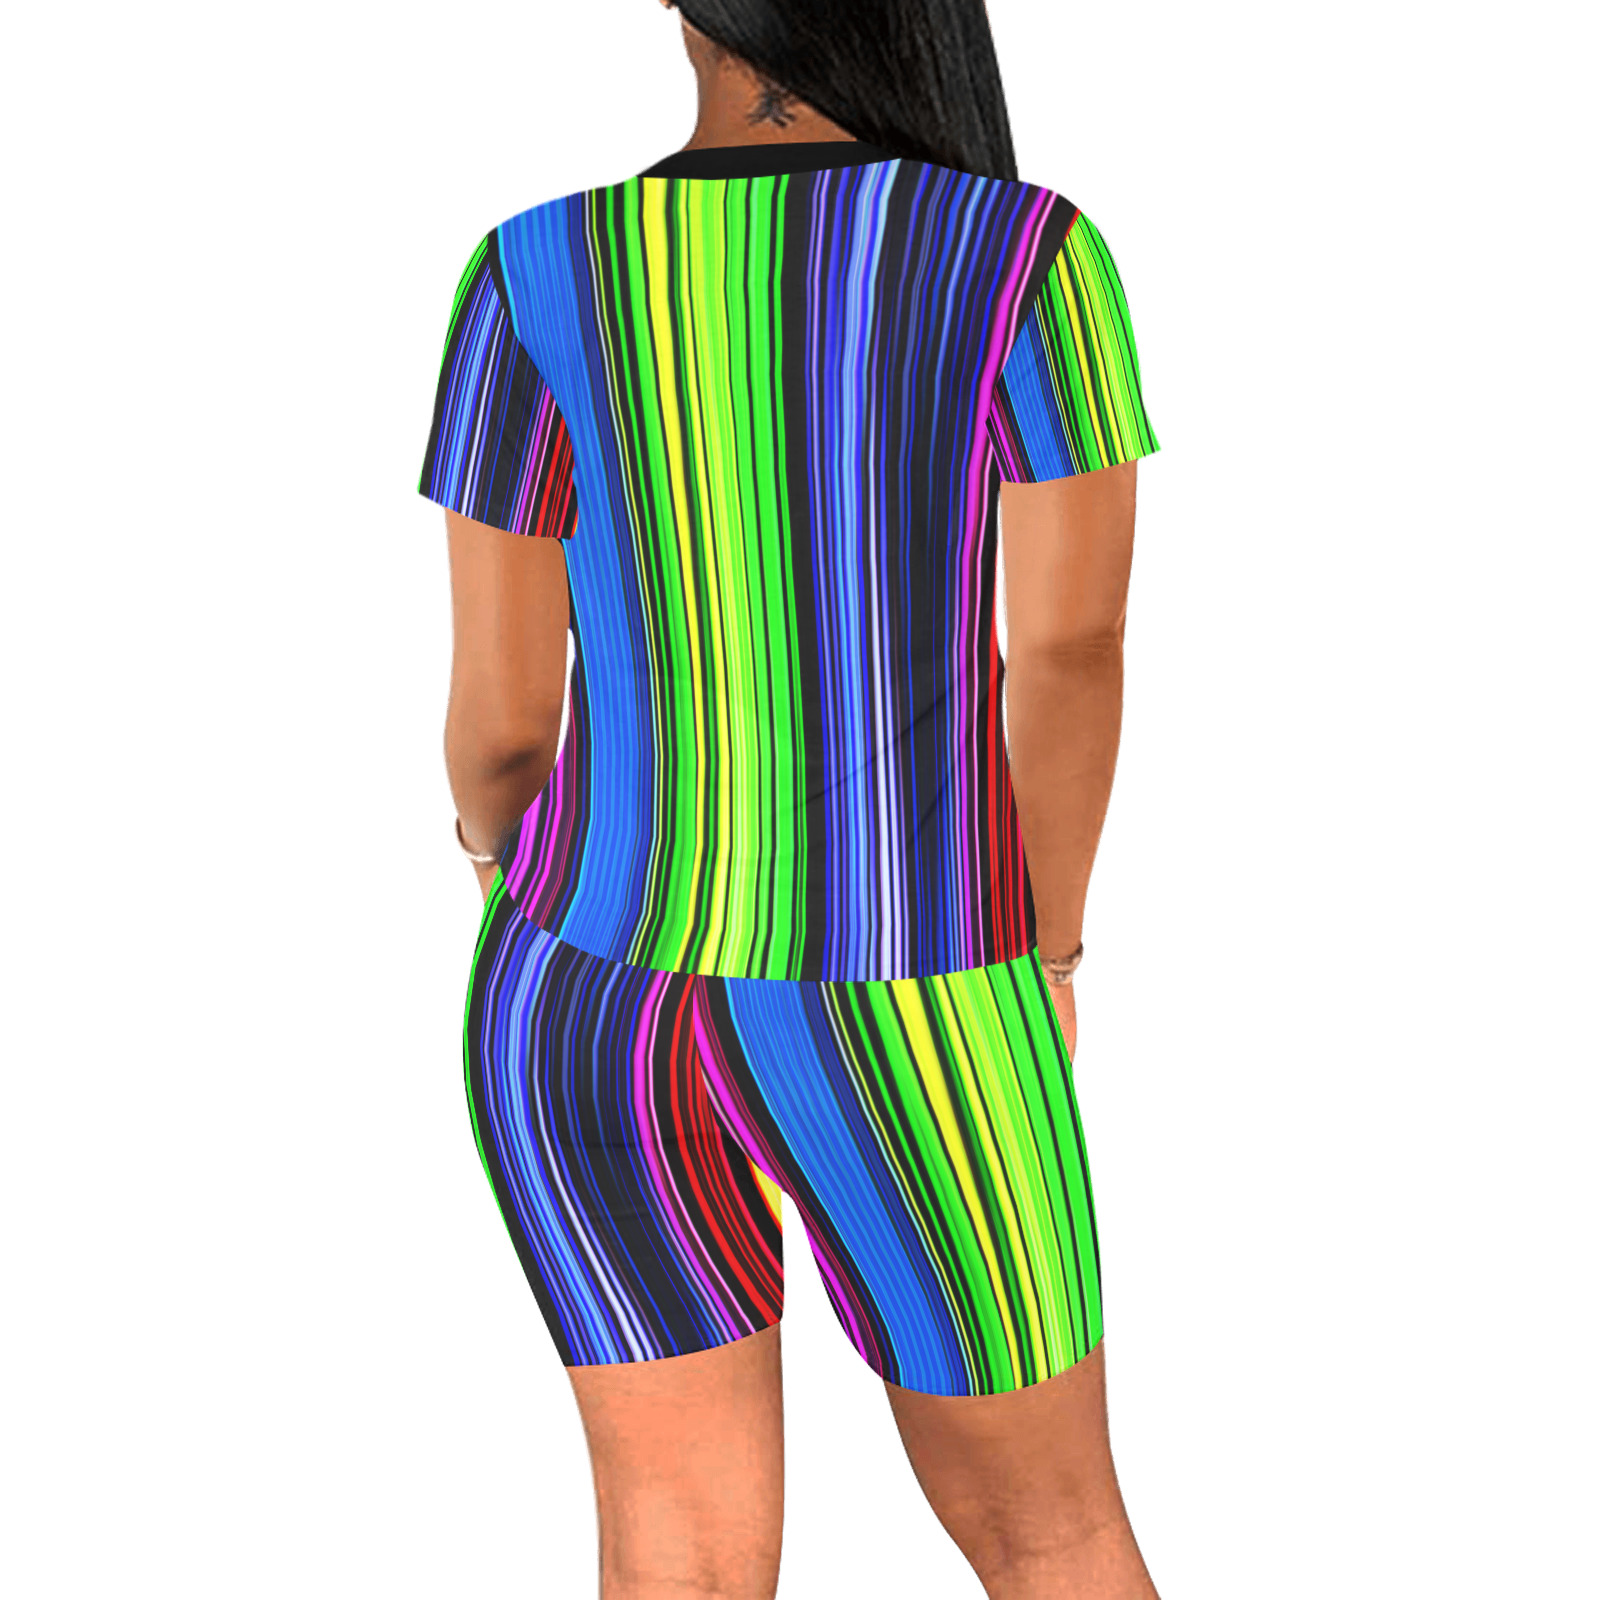 A Rainbow Of Stripes Women's Short Yoga Set